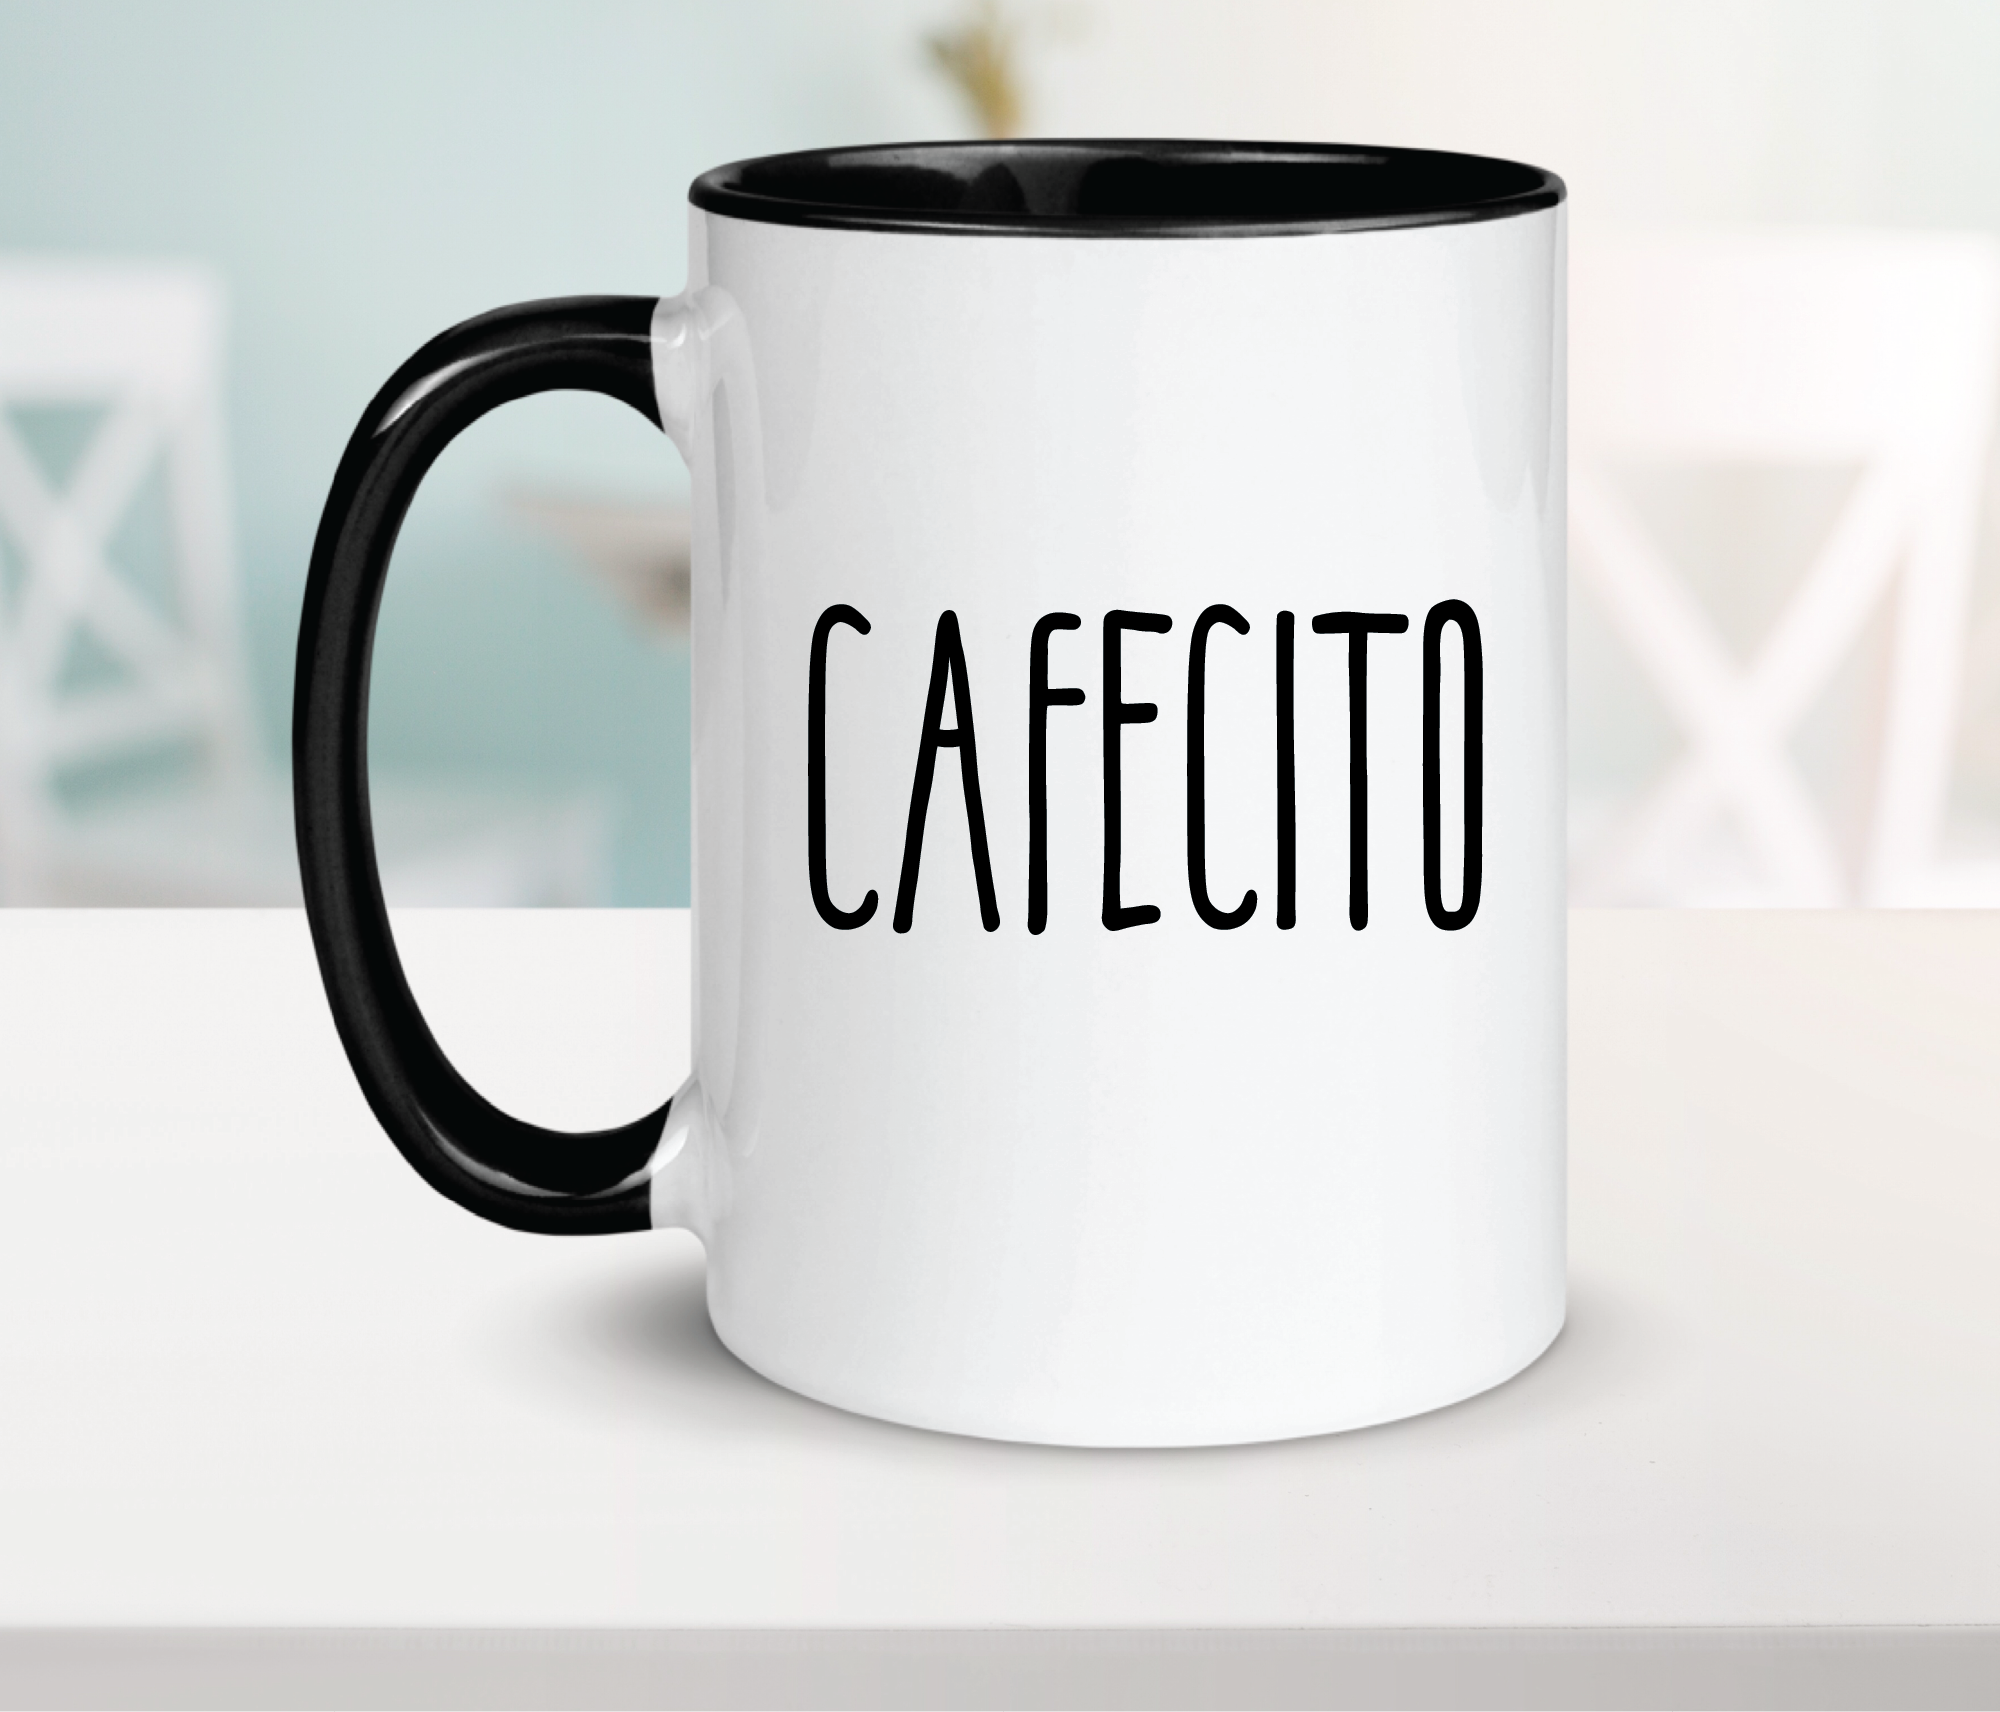 Cafecito Ceramic Coffee Mug 15oz